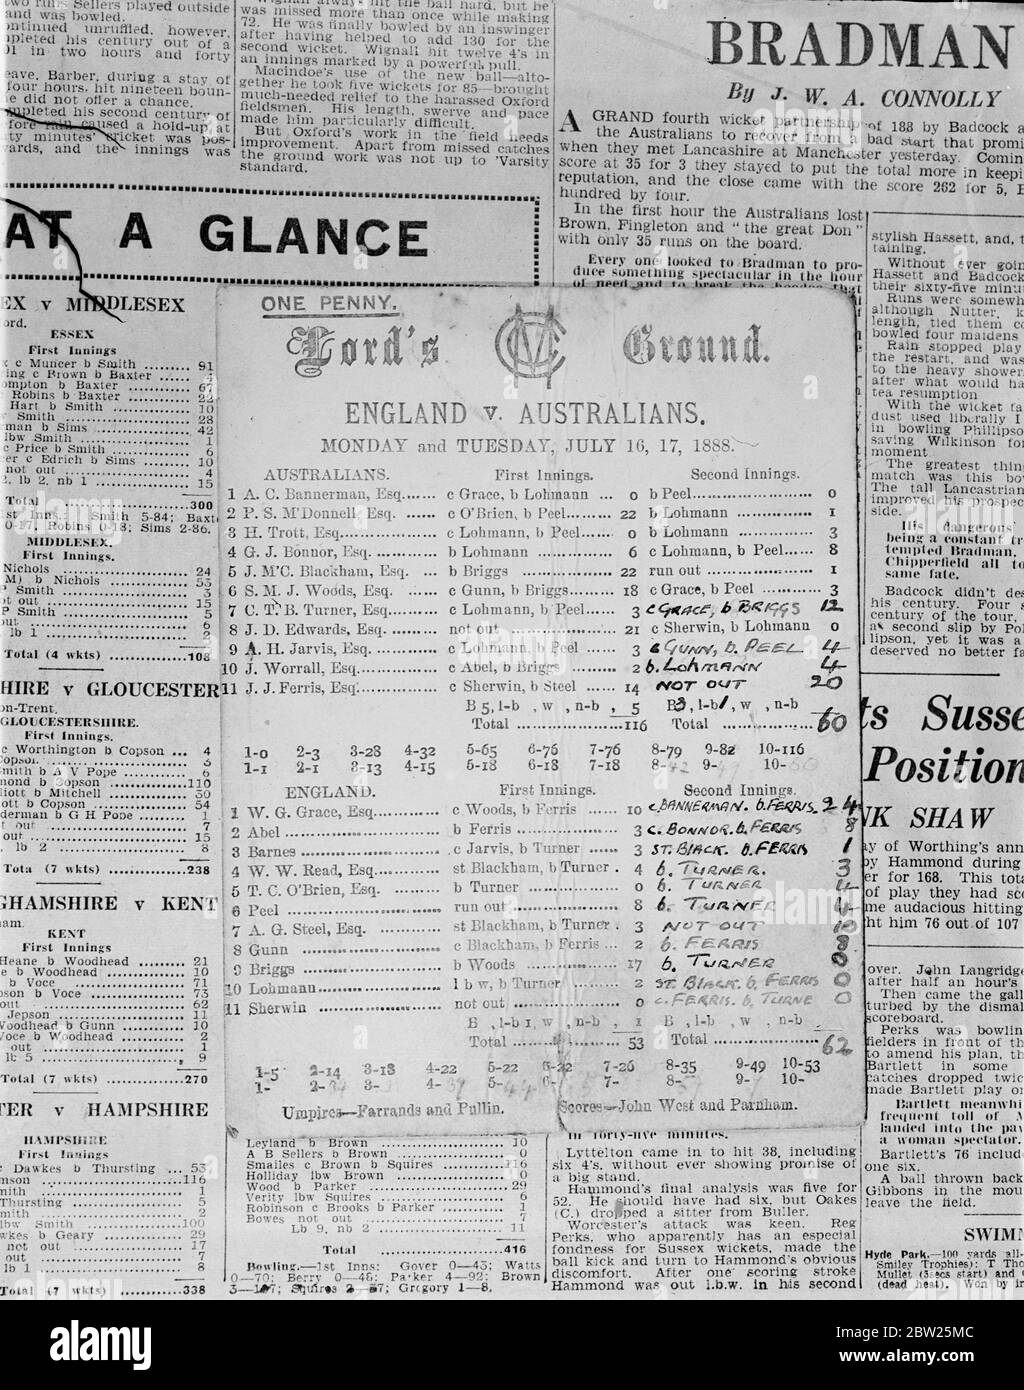 Un match test d'il y a 50 ans, Comment les Australiens ont battu l'Angleterre en 1888. Dit par l'ancienne carte de pointage. Avec l'Angleterre et l'Australie se rencontrant au troisième Test Match de la série actuelle à Old Trafford, Manchester, il y a un intérêt particulier à ce score du match entre l'Angleterre et les Australiens joué à Lord's les 16 et 17 juillet 1888, il y a presque exactement 50 ans, Avec Dr W G Grace dans l'équipe d'Angleterre. La carte vient d'être découverte parmi ses possessions par un amateur de cricket. Le dernier score du match de deux jours est considéré comme ayant été rempli par le propriétaire original de la carte. T Banque D'Images